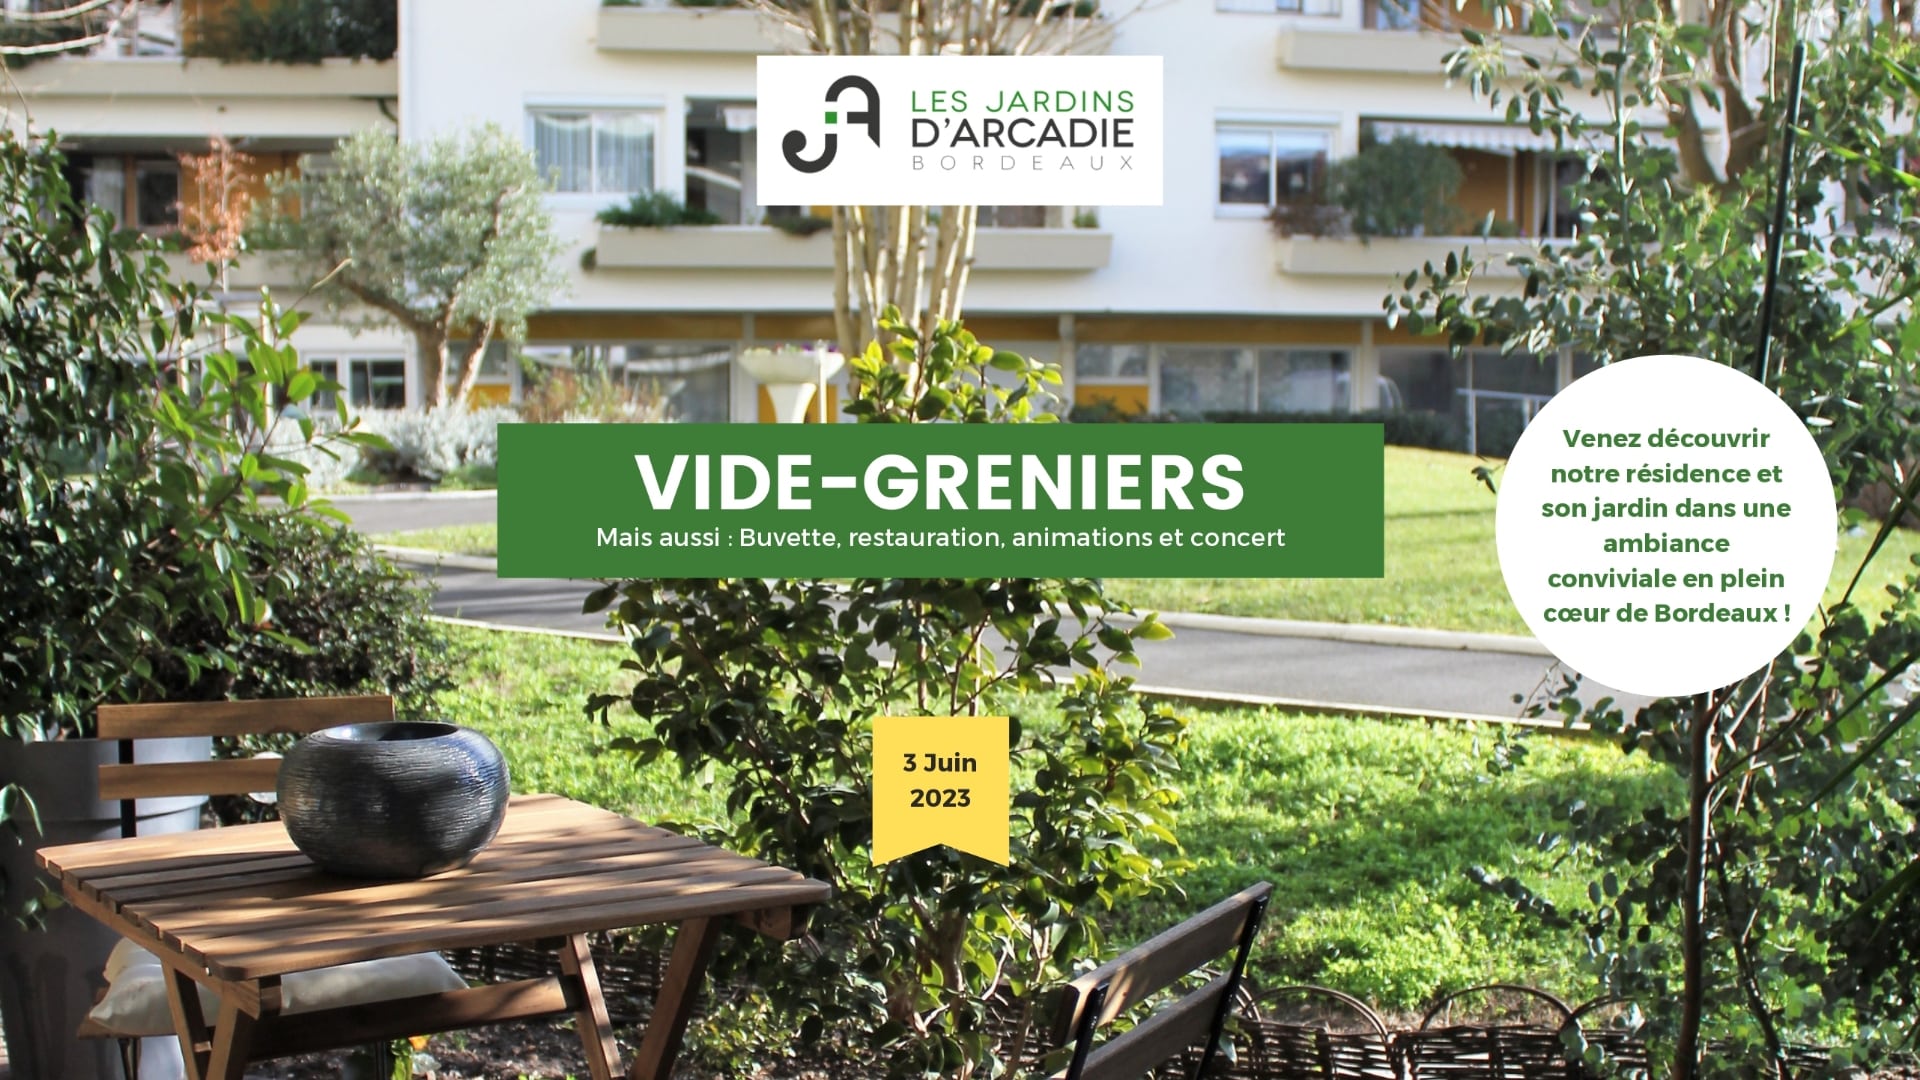 Les Jardins D&1011.jpg039;Arcadie Slide 1 1011